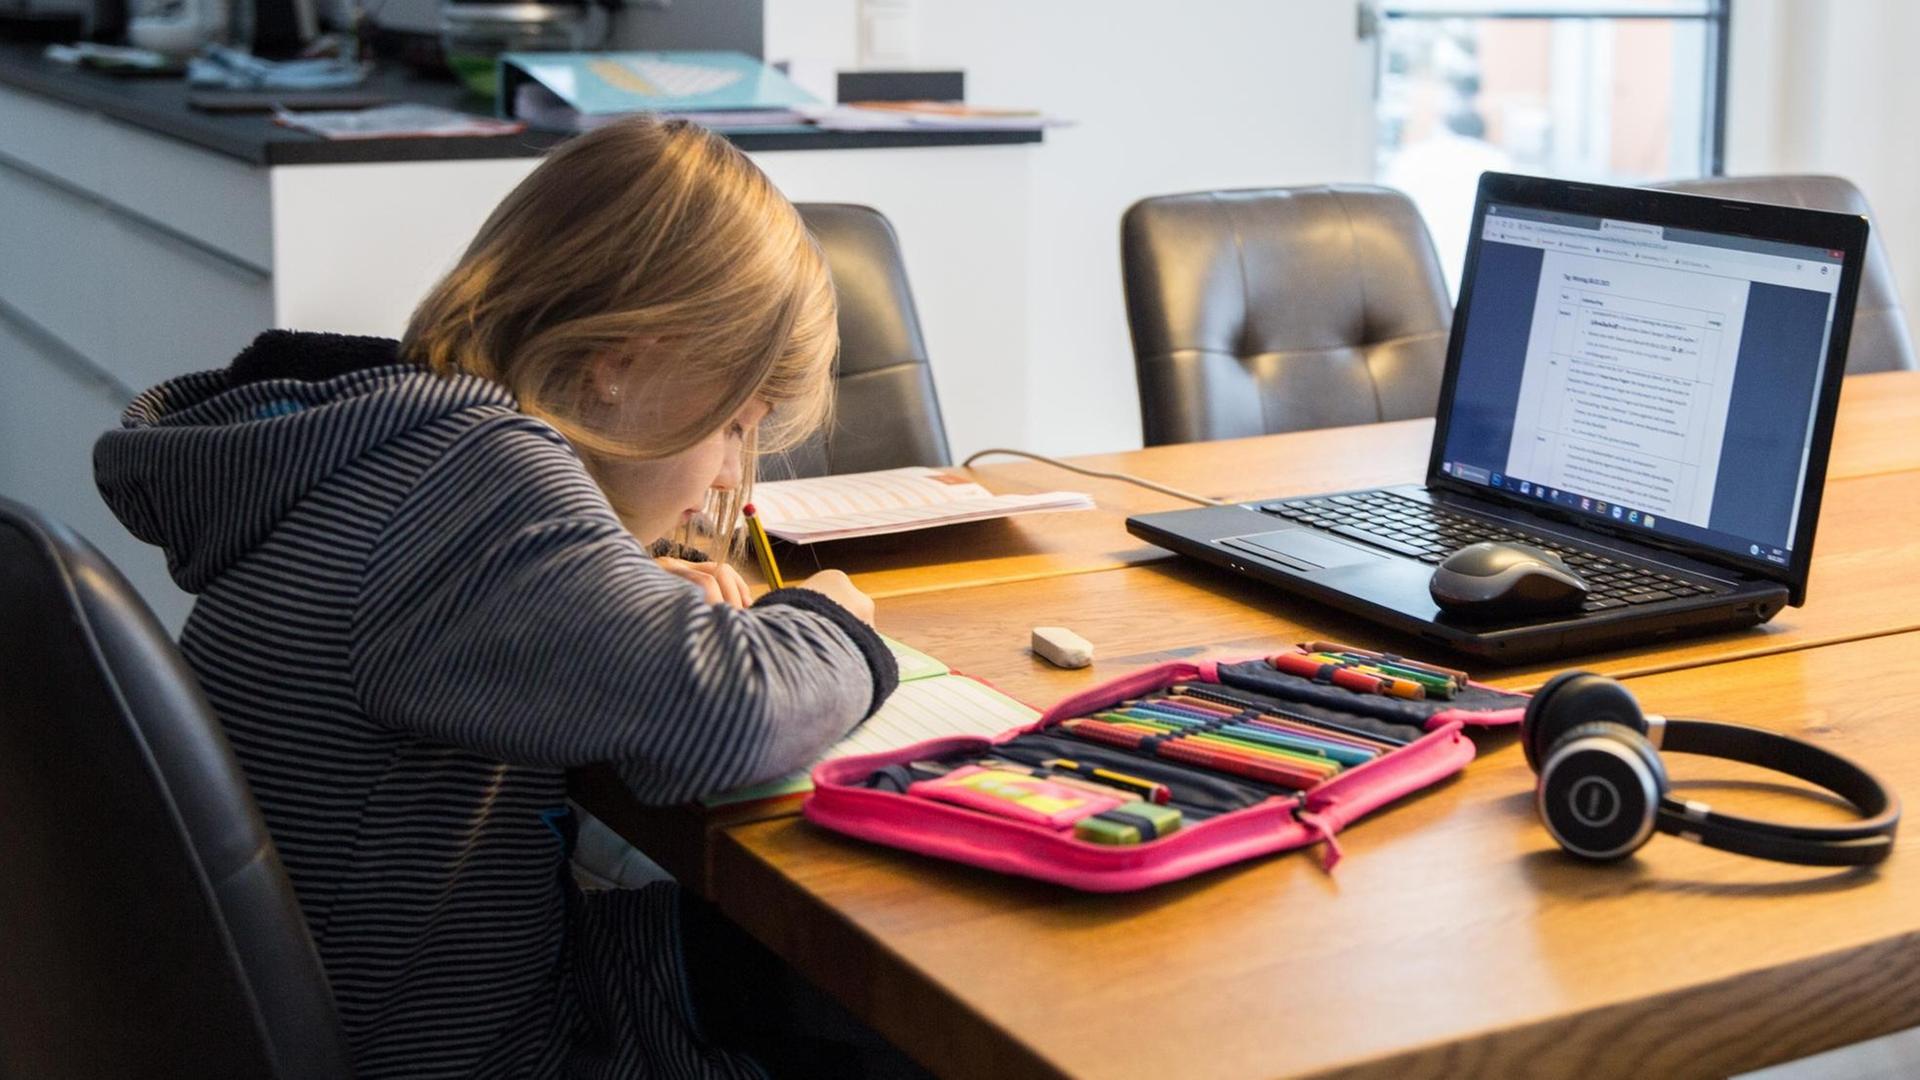 Ein Kind sitzt an einem Küchentisch und löst Aufgaben in einem Schulheft. Auf dem Tisch steht ein aufgeklappter Laptop, neben dem Rechner liegen Bücher und Hefte mit weiteren Schulutensilien für das Homeschooling.